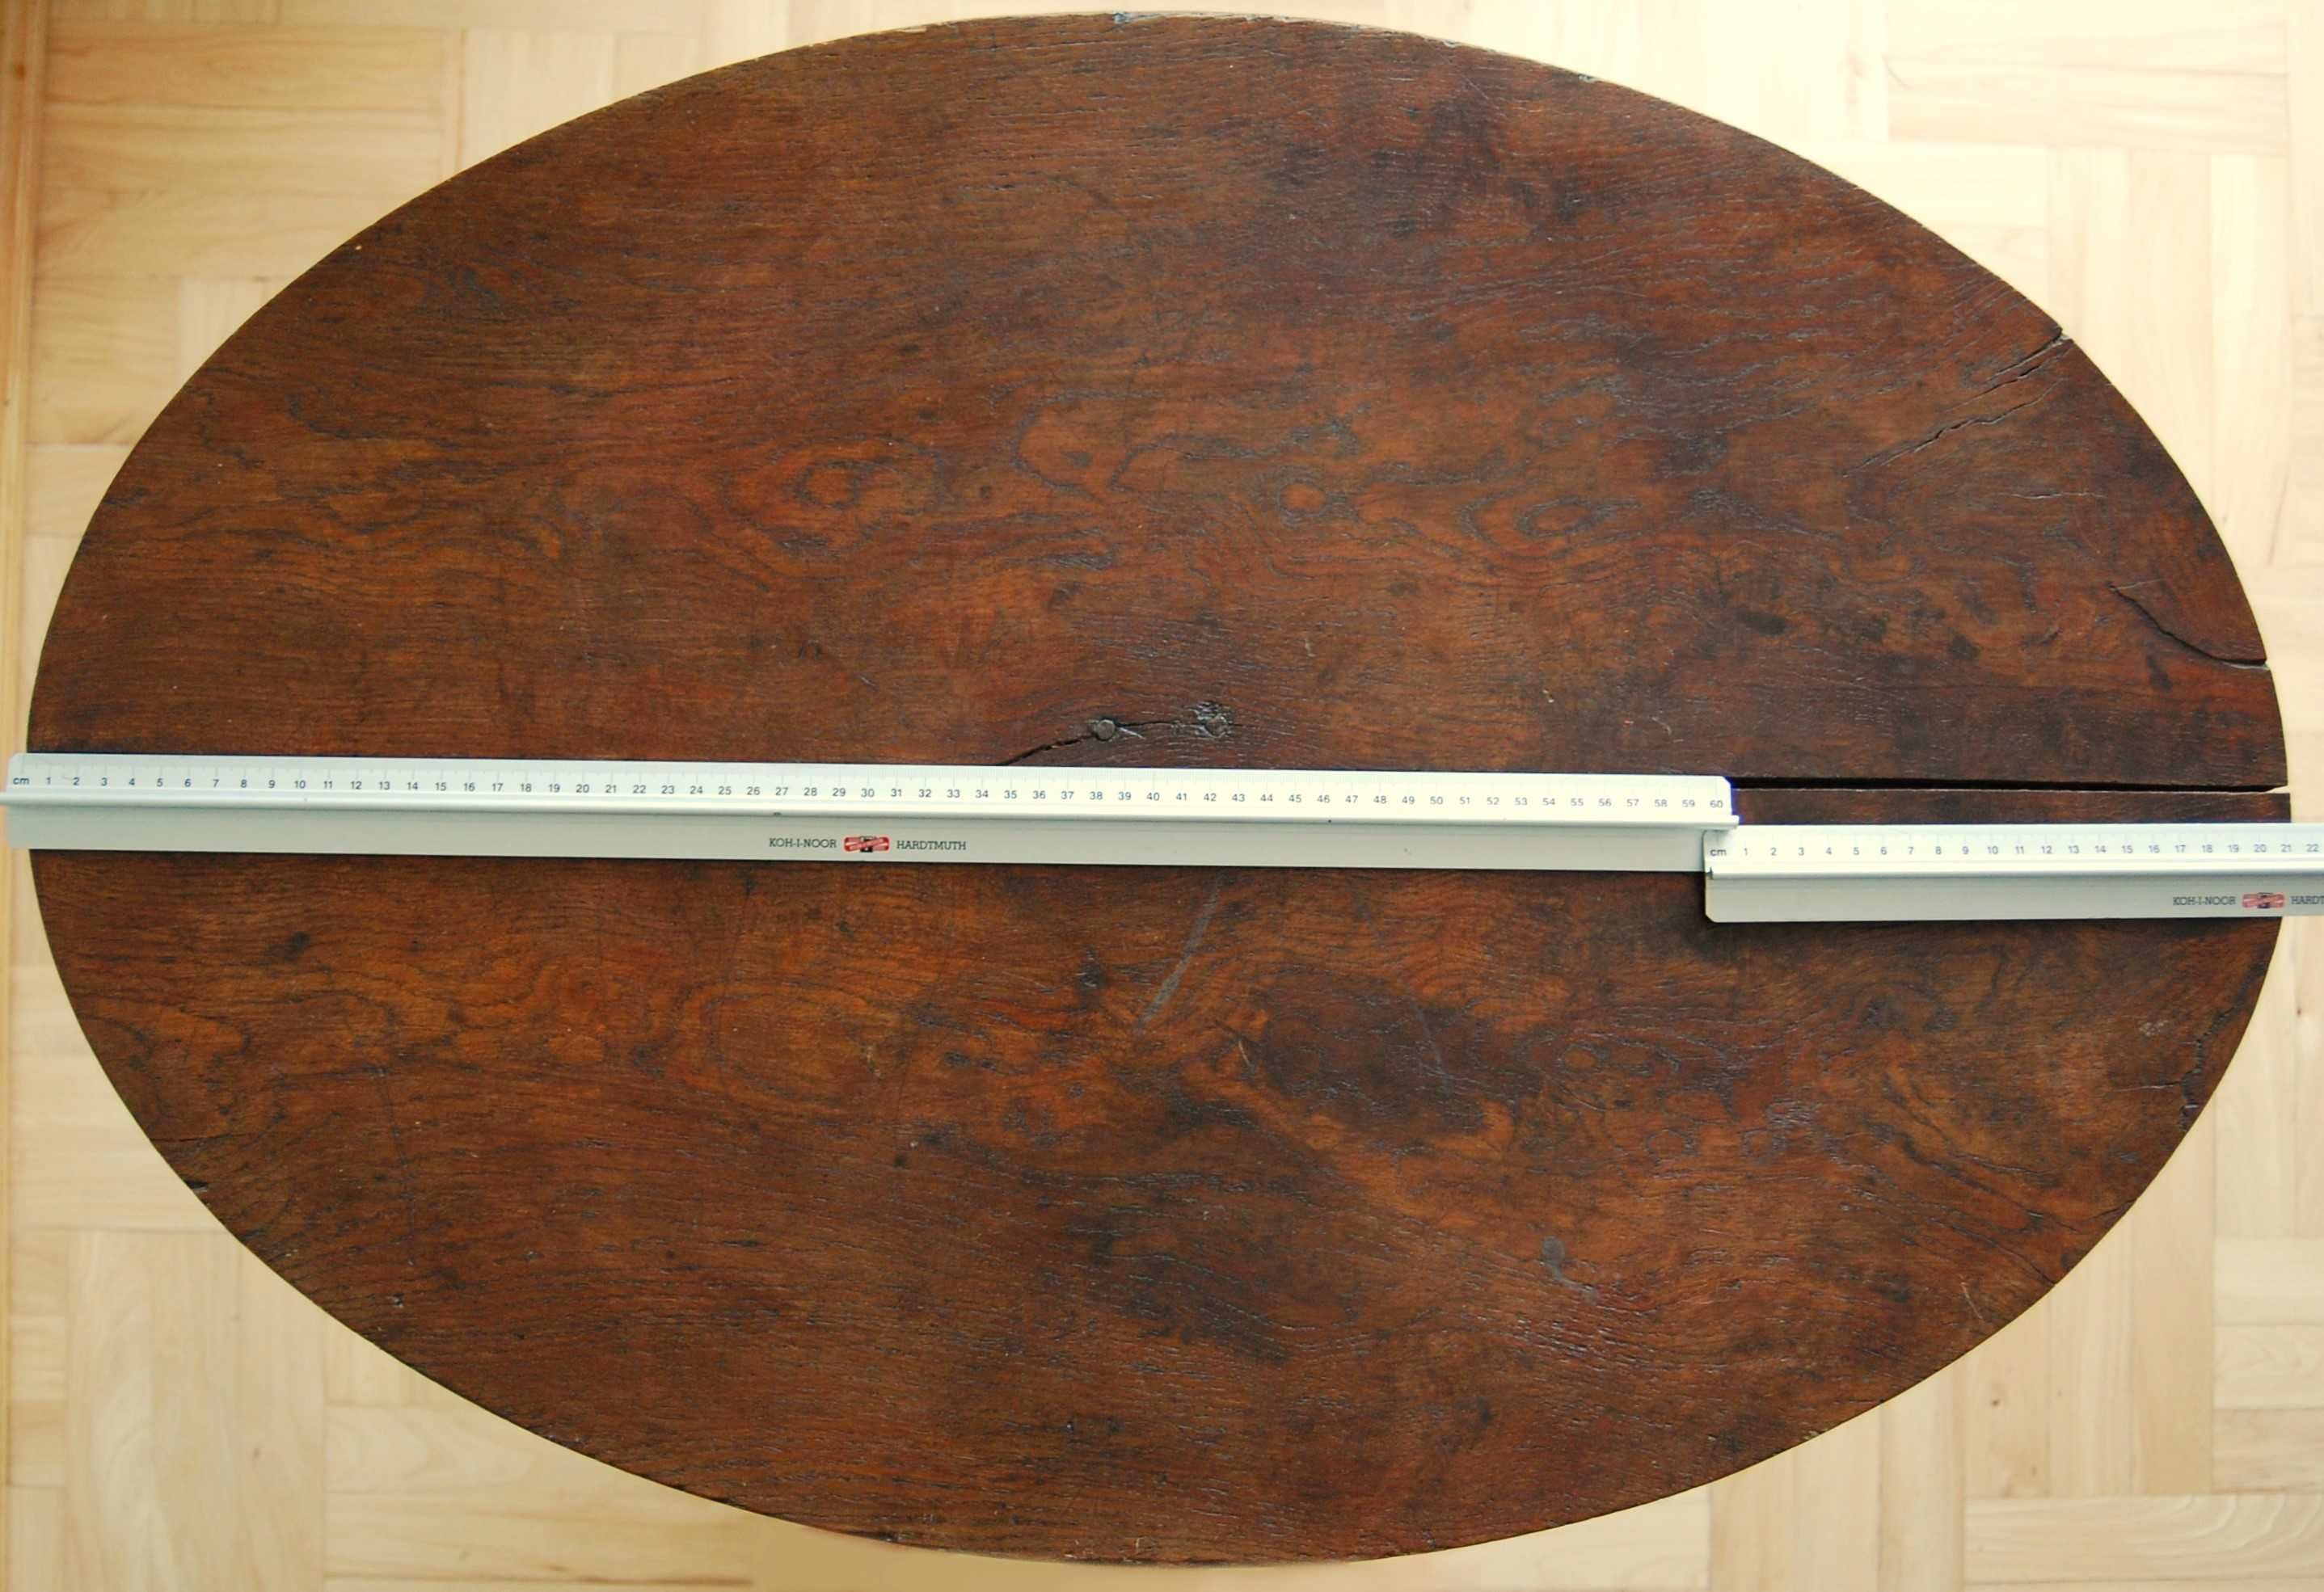 Przedwojenny stolik drewniany, kawowy, na jednej nodze, toczona noga